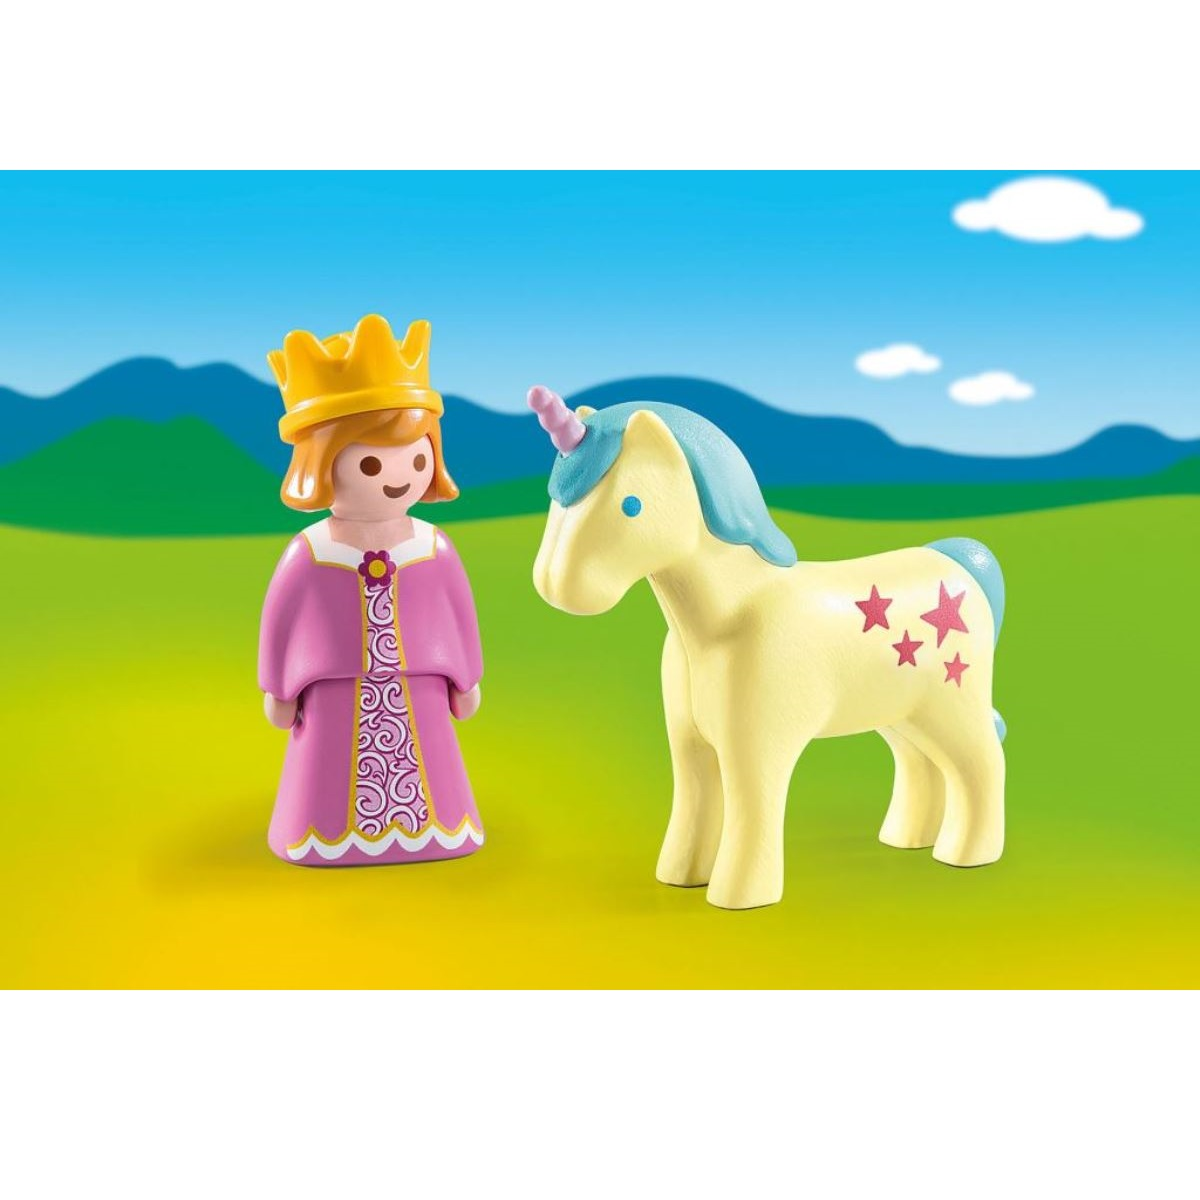 PLAYMOBIL Einhorn Spielzeug Prinzessin mit